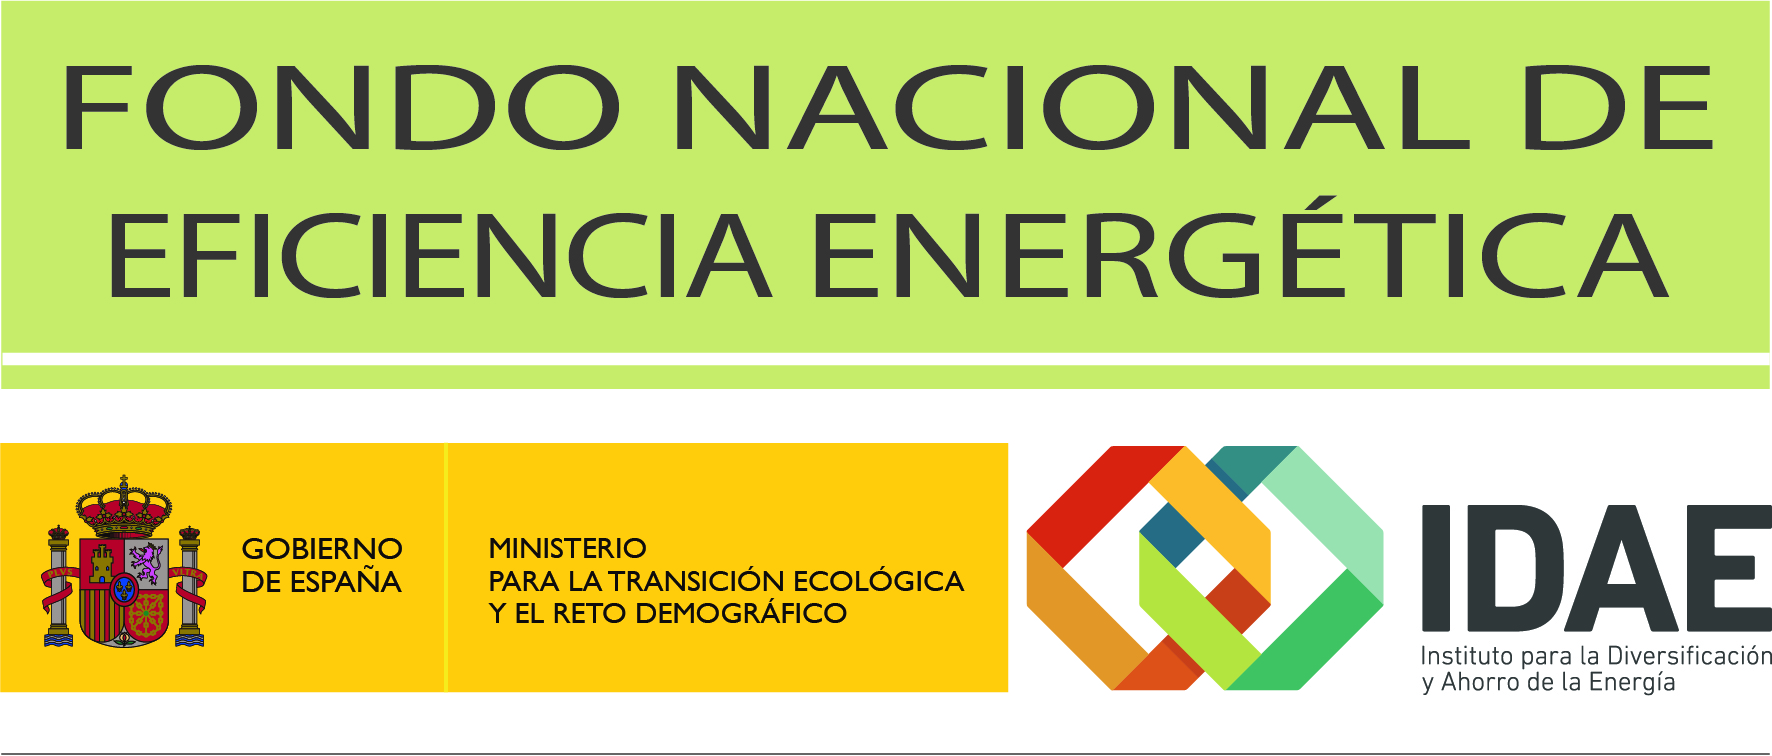 Fondo Nacional de Eficiencia Energética